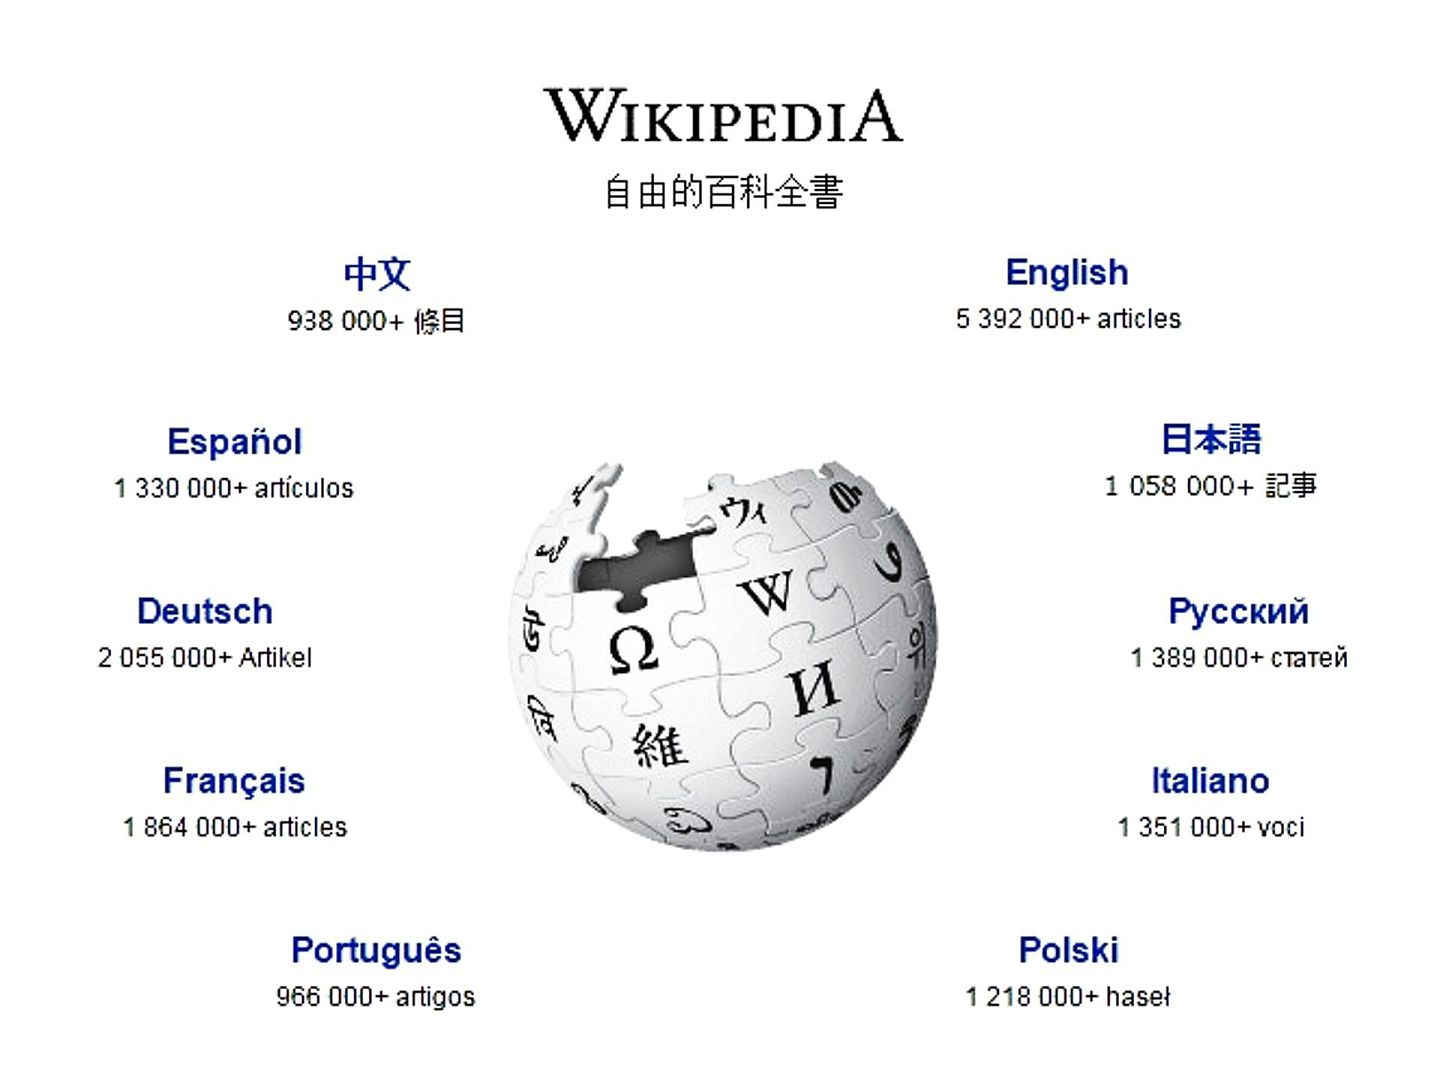 维基百科是用多种语言编写而成的网络百科全书。（维基百科网站截图）